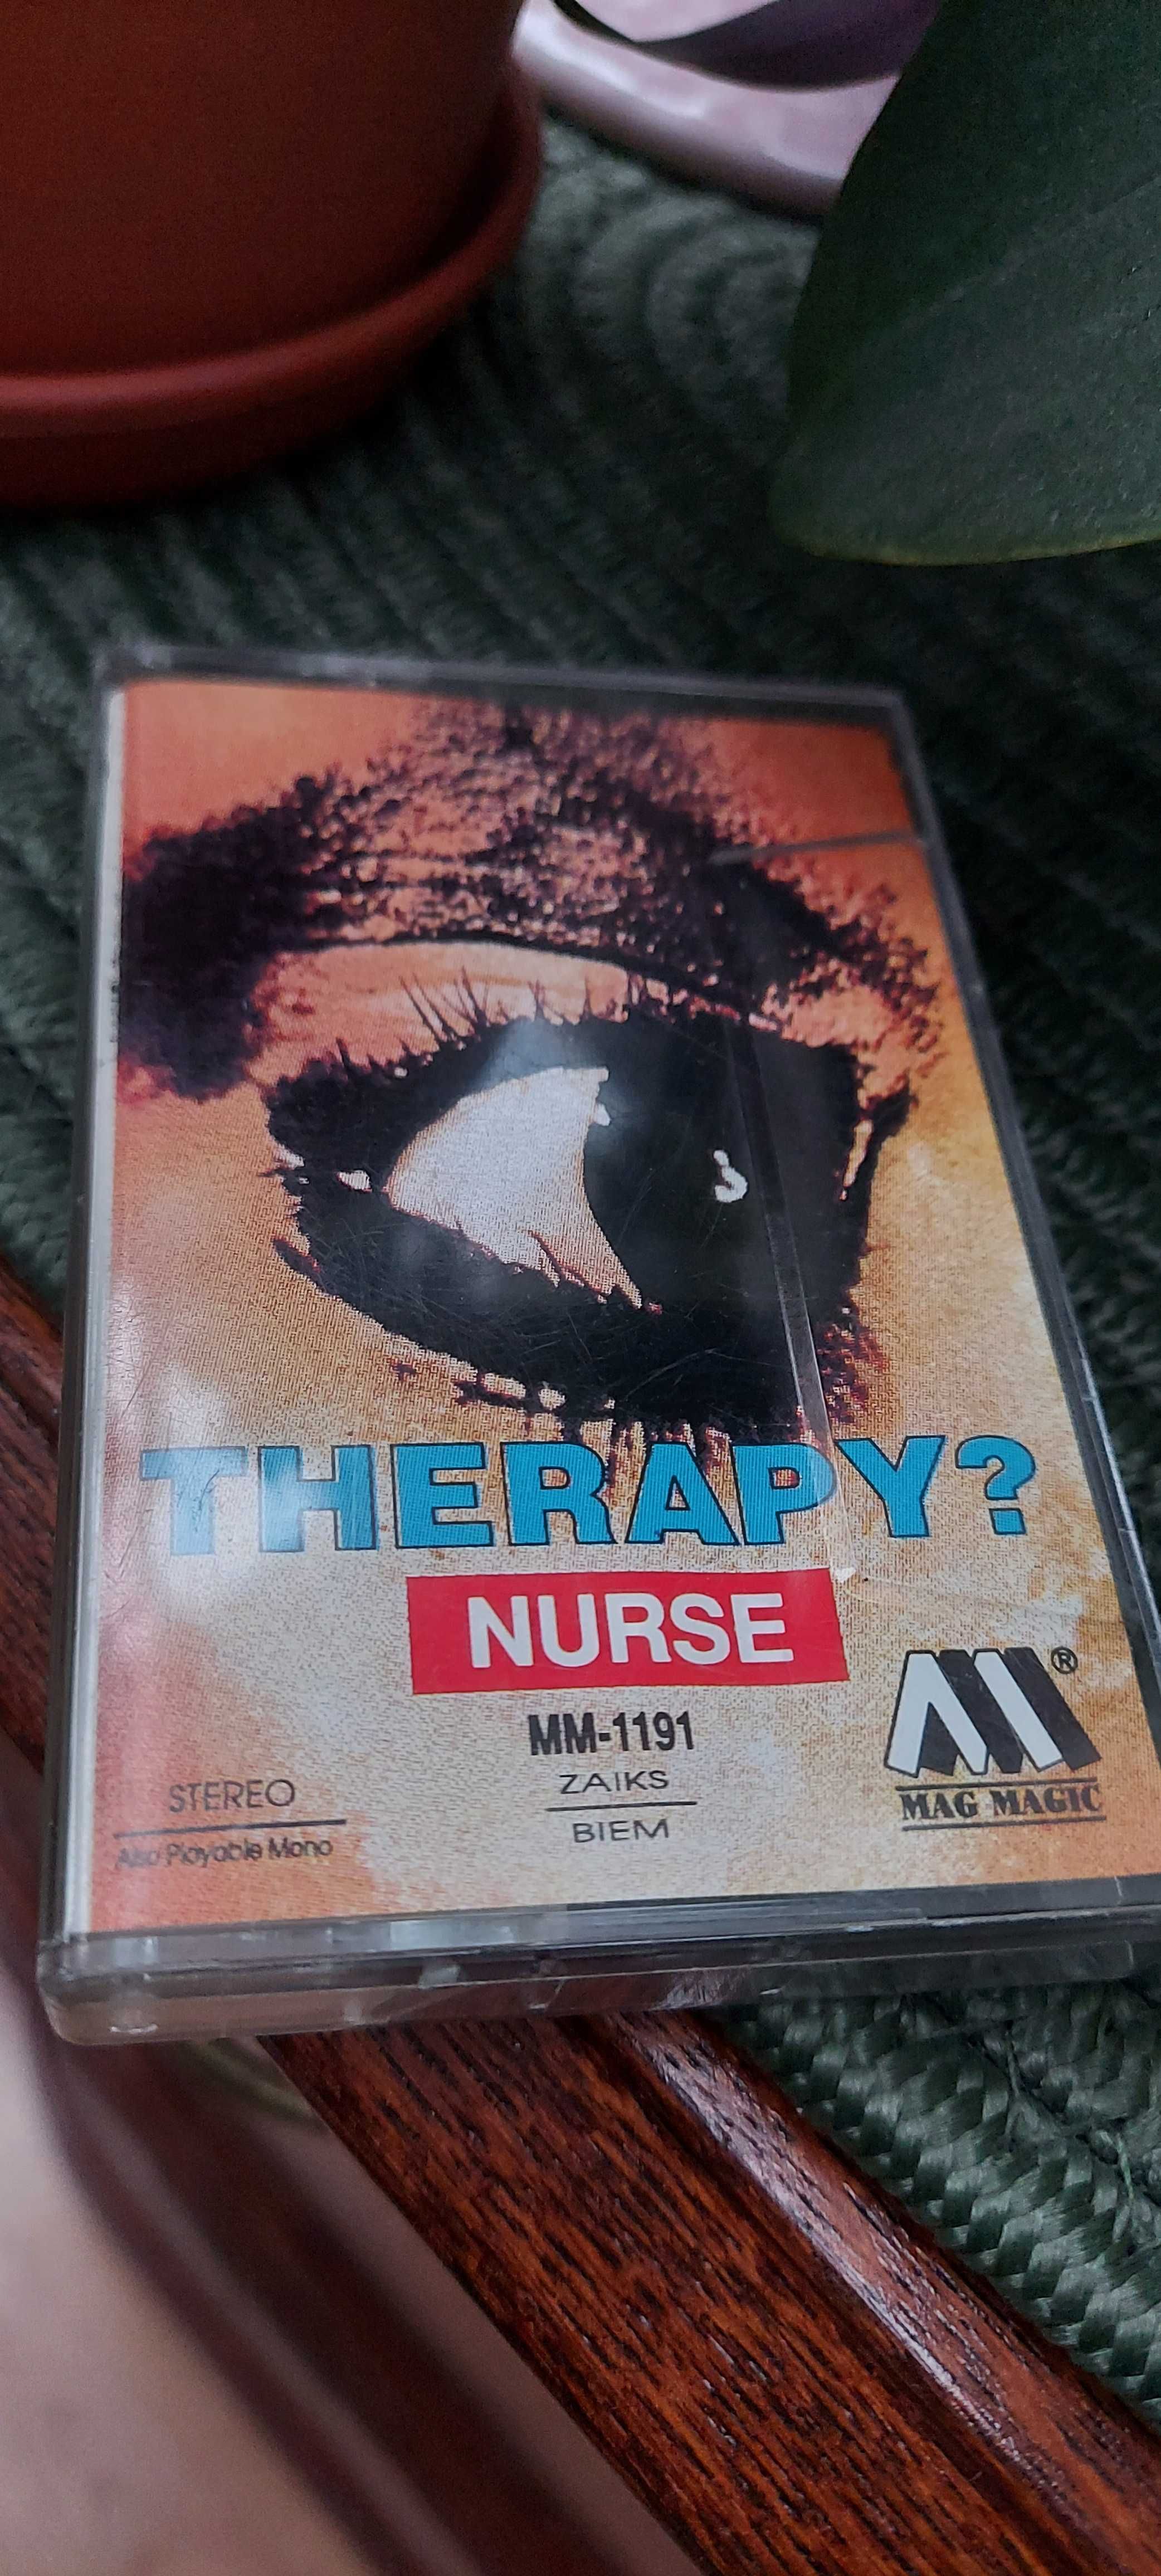 Therapy nurse kaseta